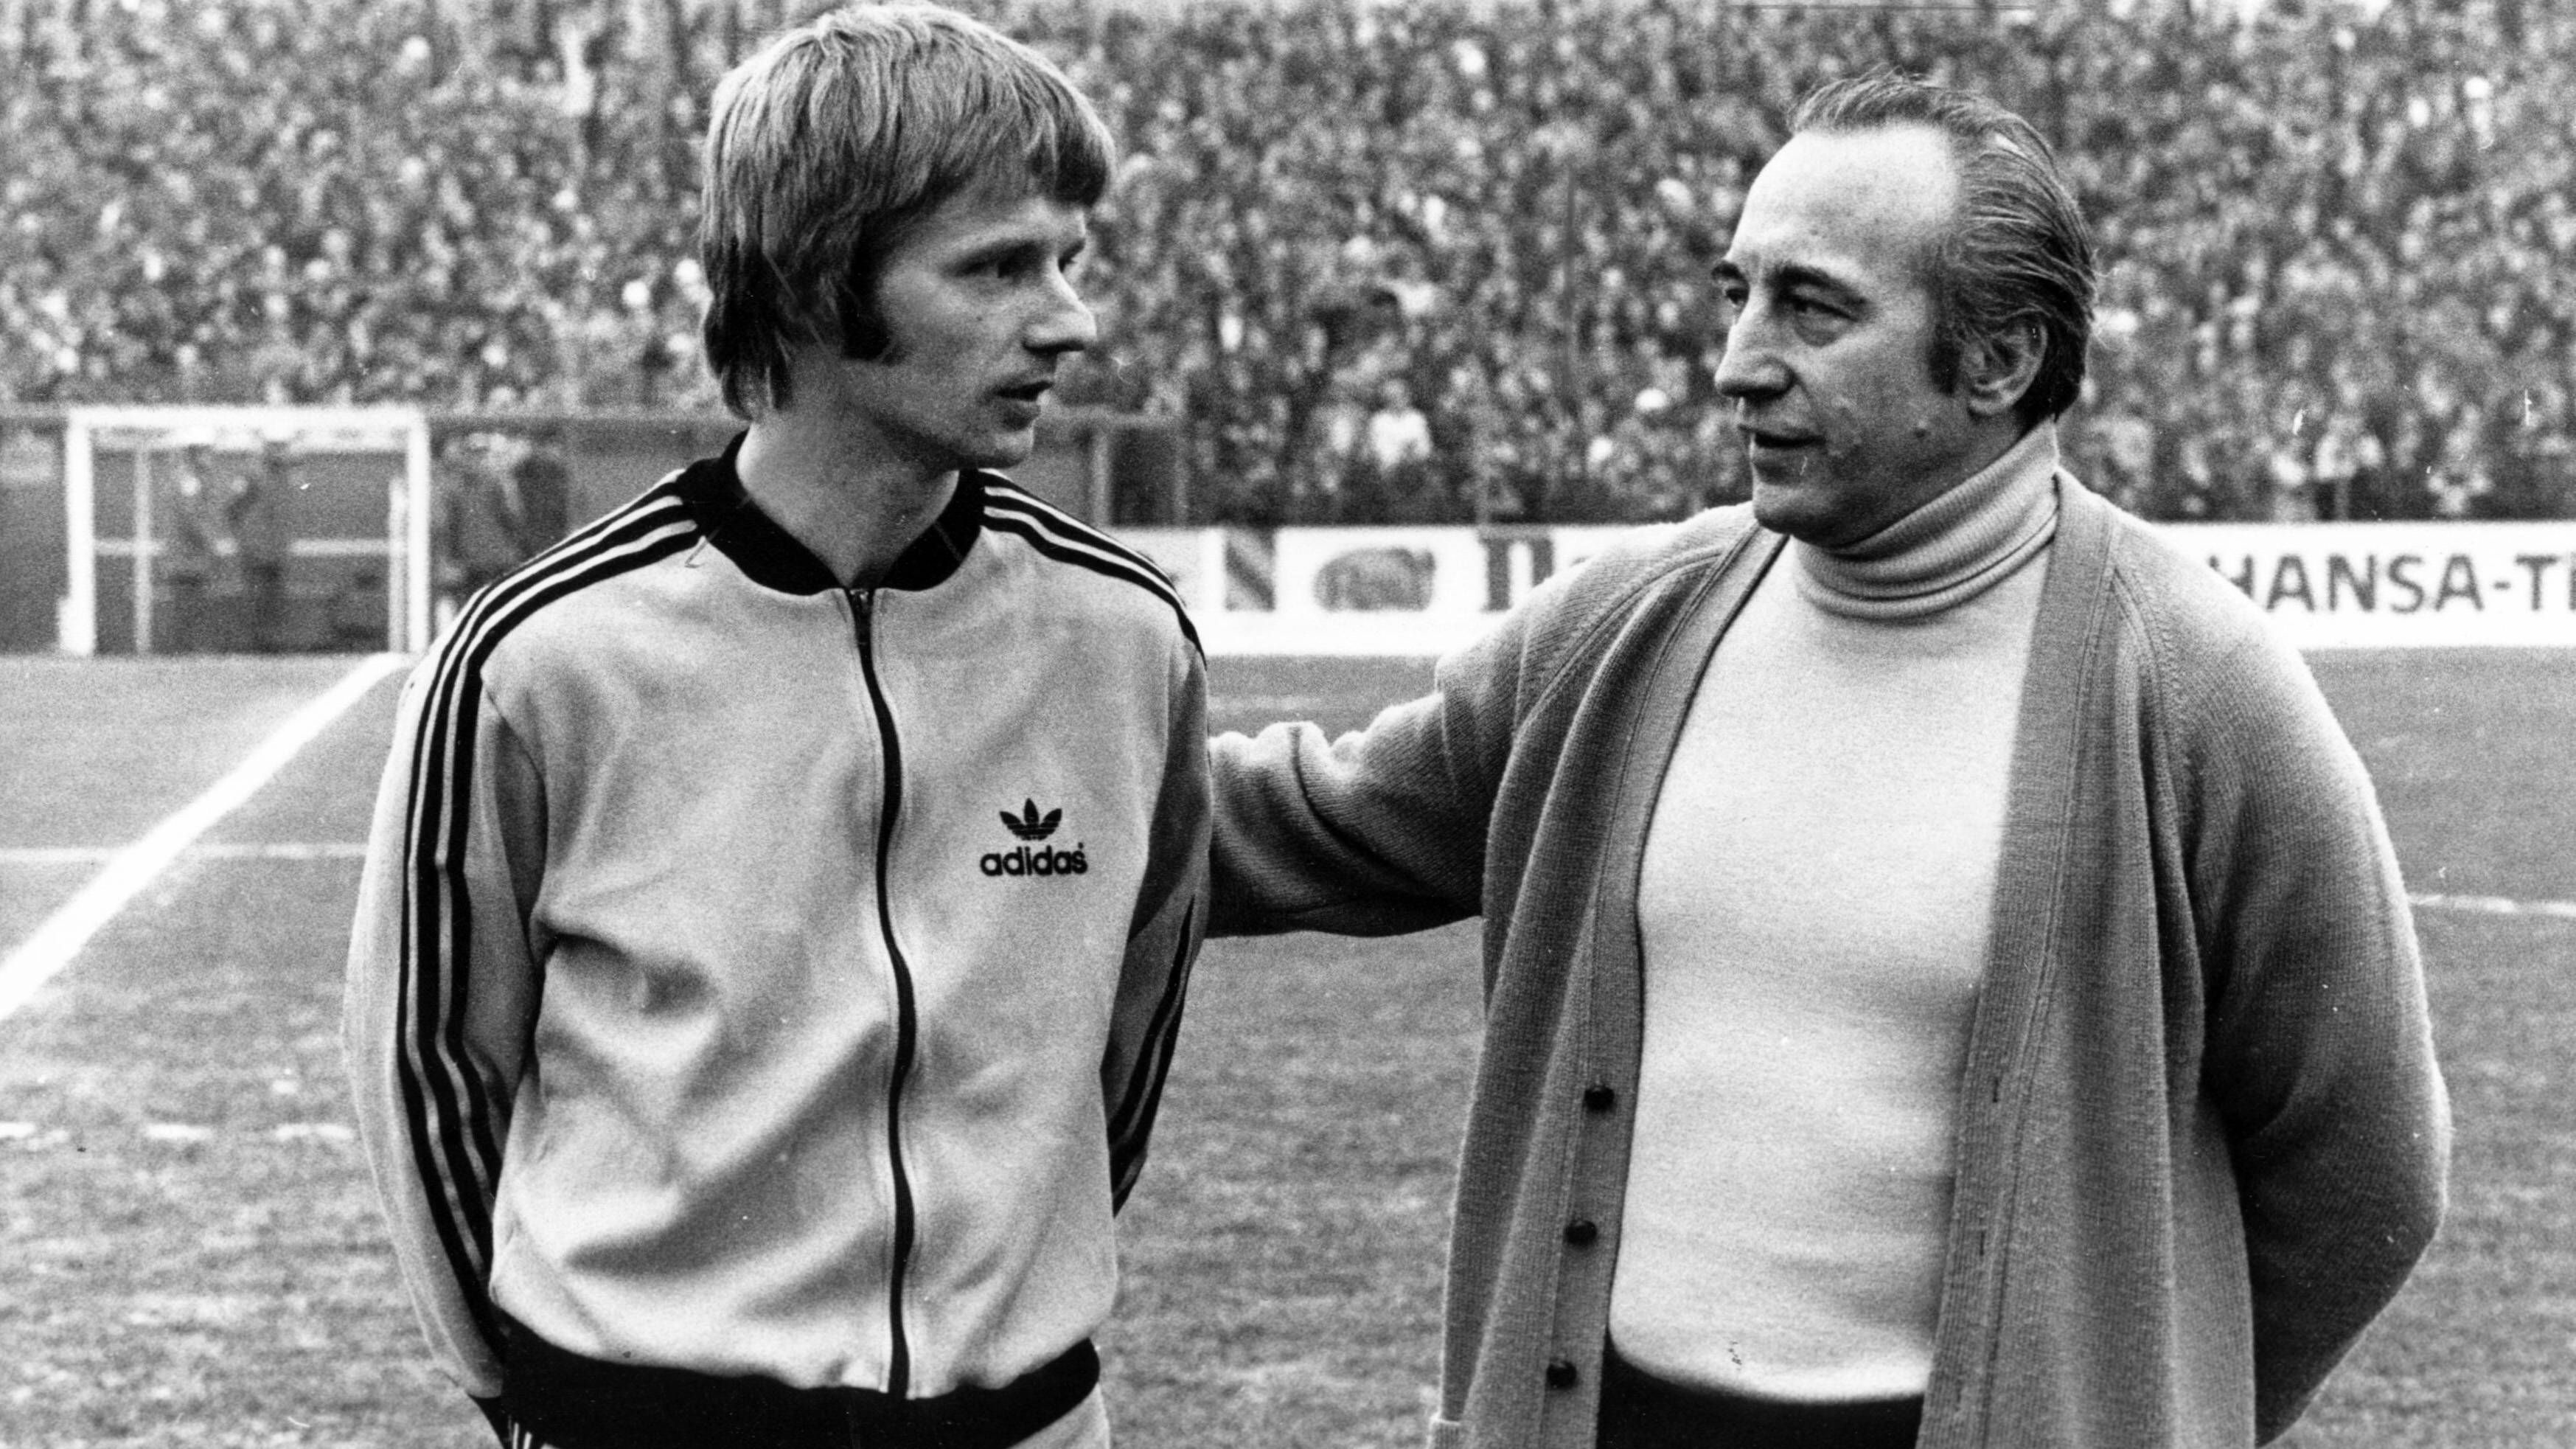 <strong>Platz 4. Horst Buhtz (rechts): 2,06 Punkte pro Spiel</strong><br><strong>Amtszeit beim BVB</strong>: 01.02.1976 - 14.06.1976<br><strong>Spiele als BVB-Trainer:</strong> 17 ( 12 Siege, 2 Unentschieden, 4 Niederlage)